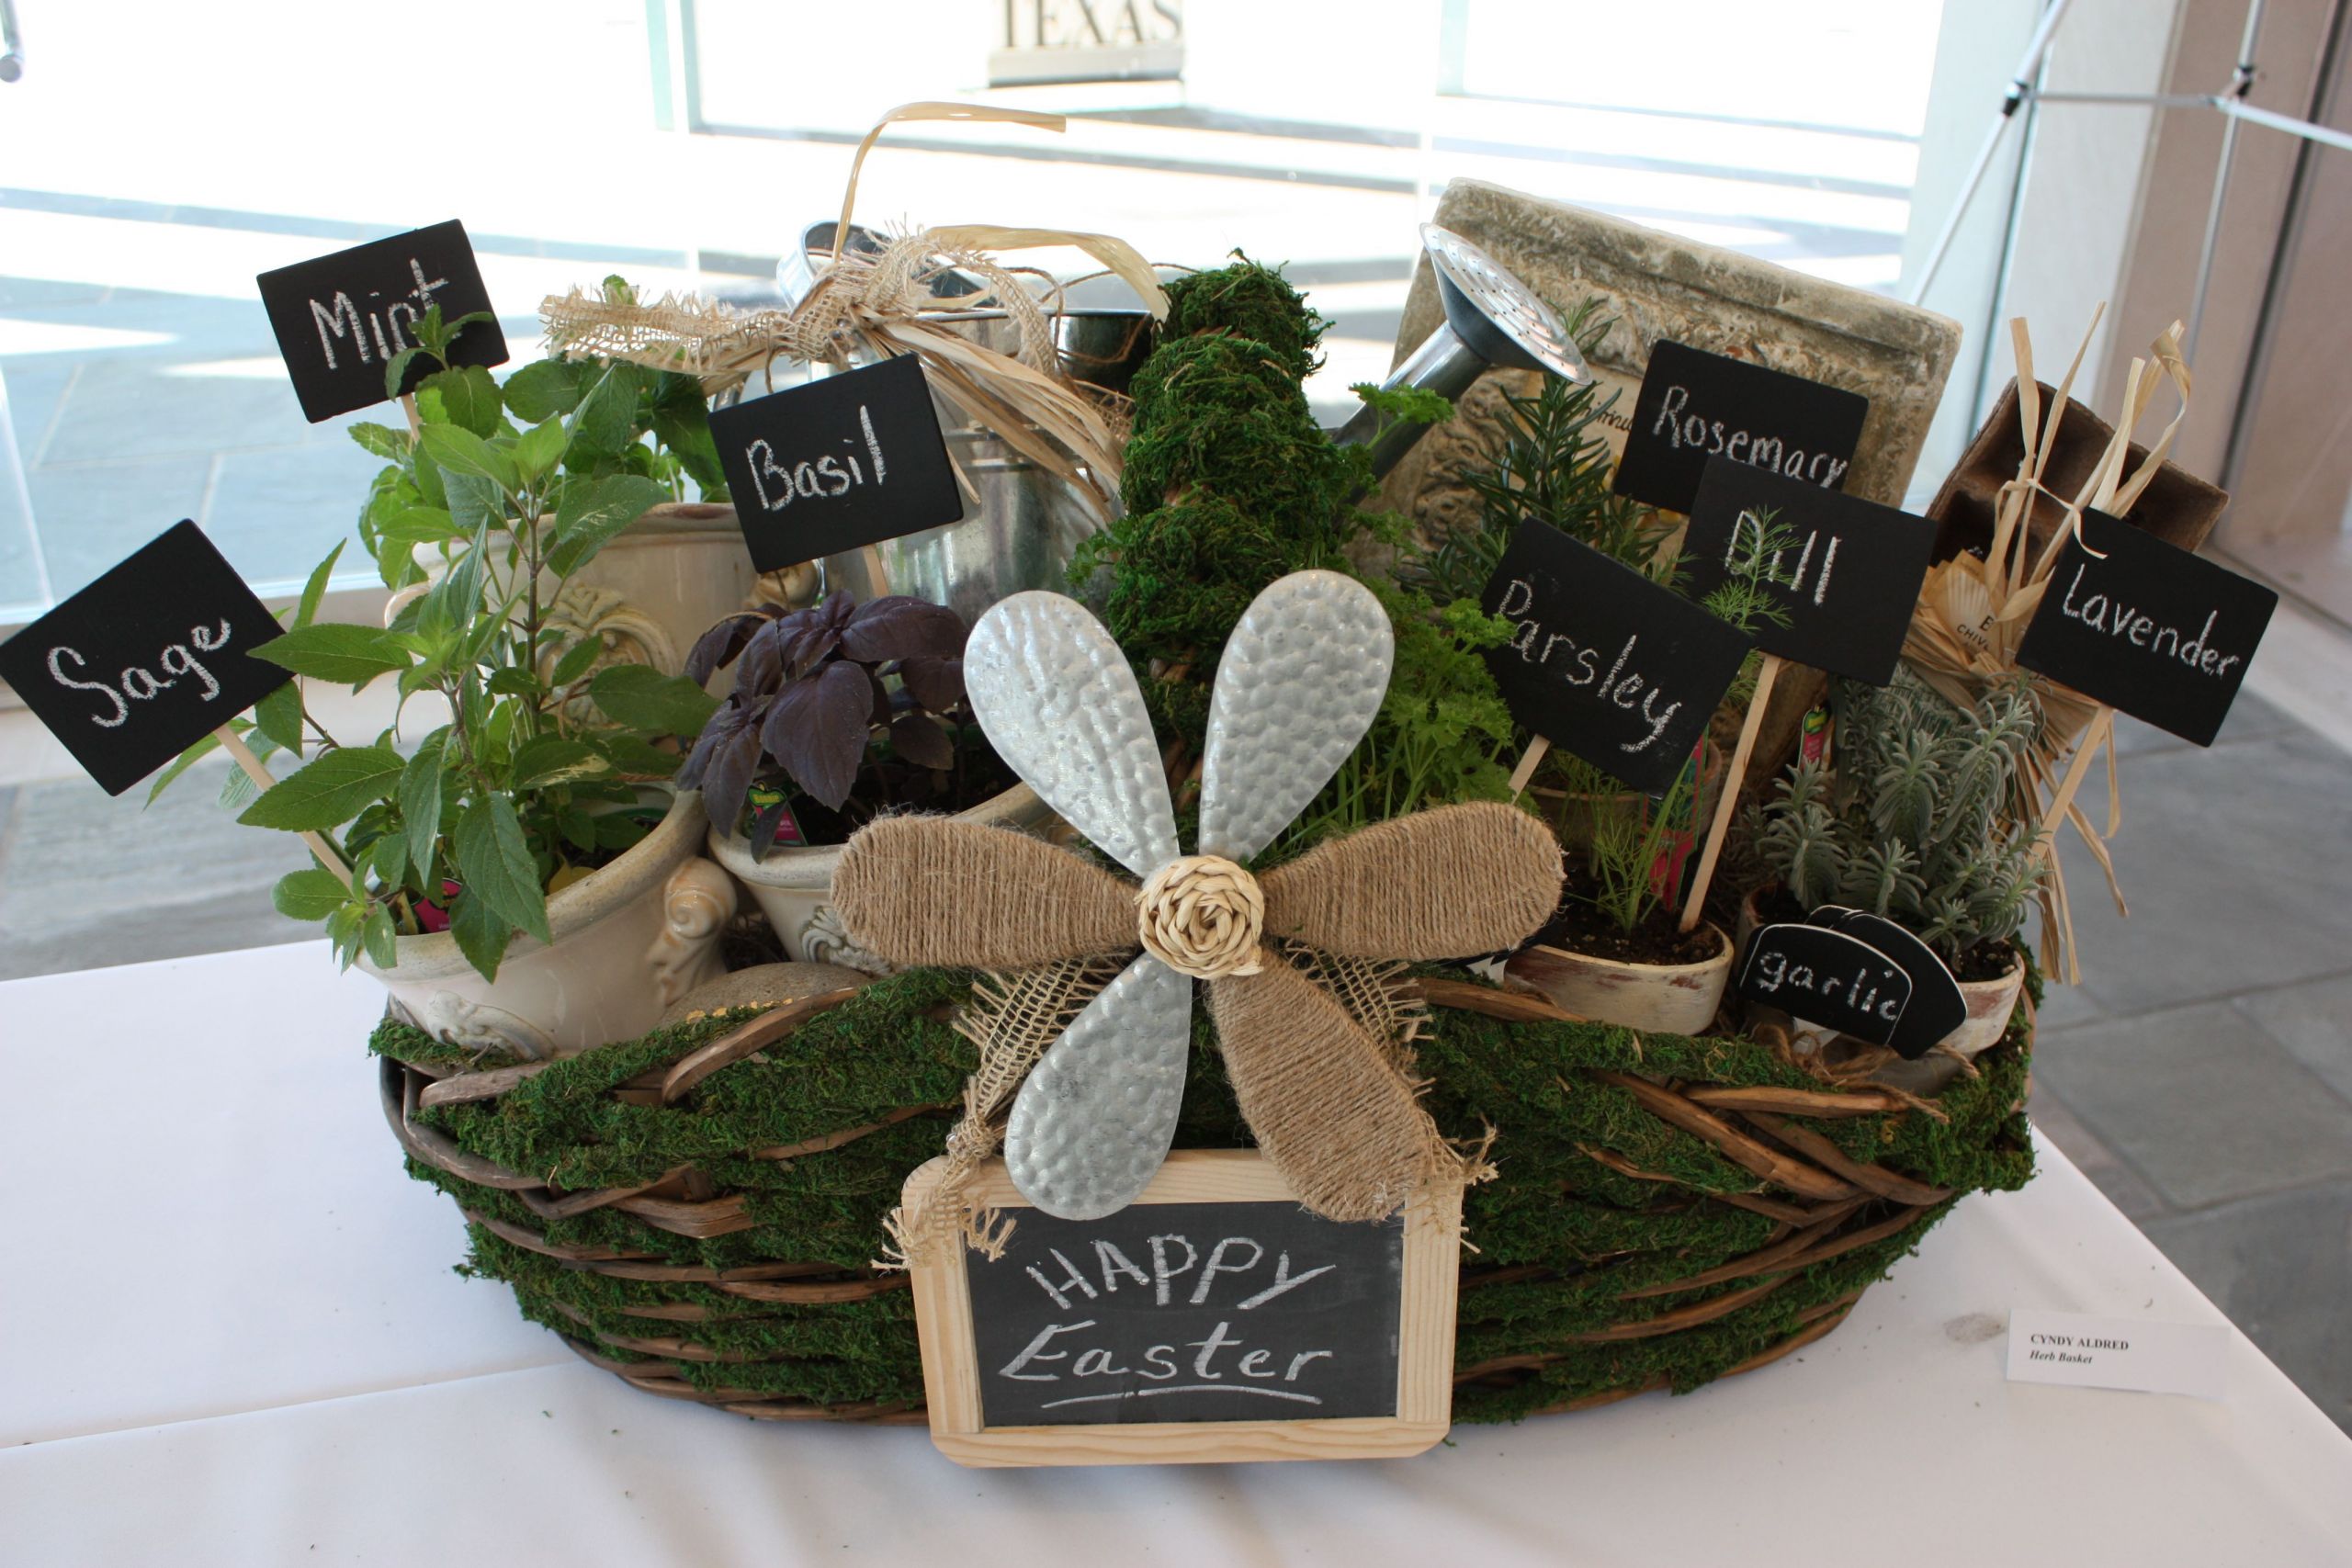 Garden Themed Gift Basket Ideas
 Herb Filled Moss Basket DIY Gift Idea